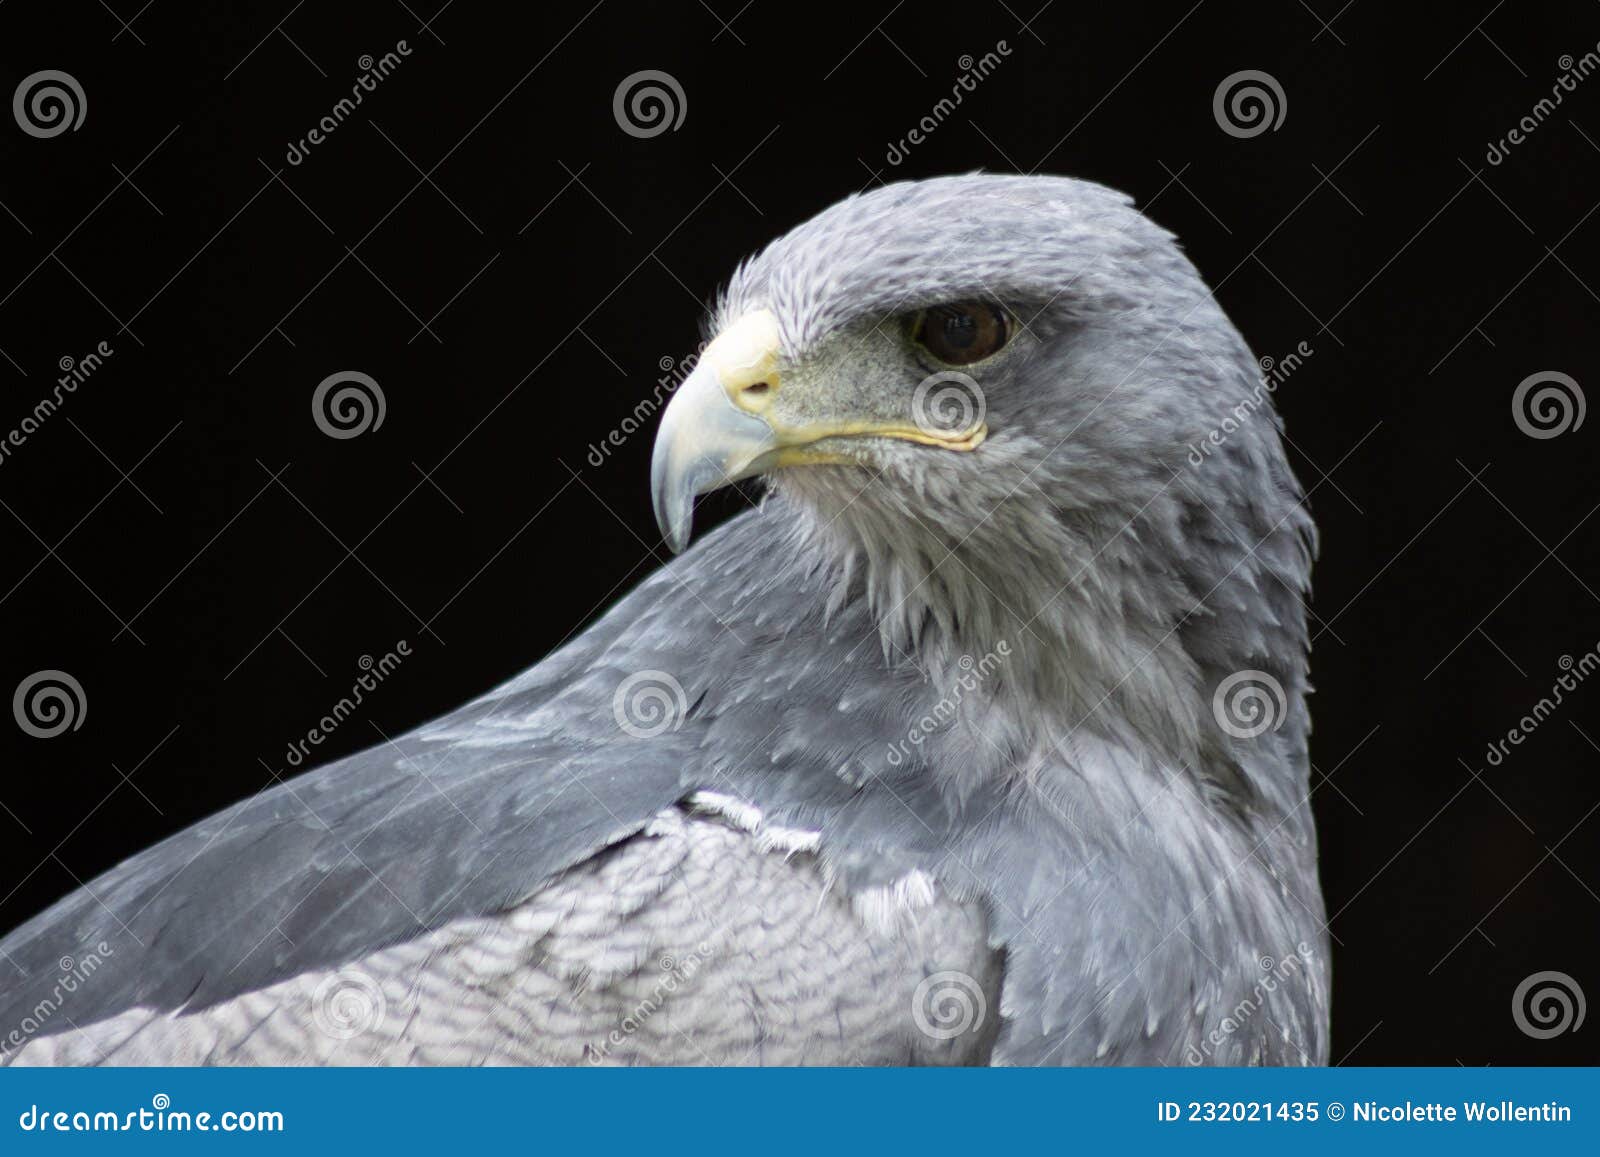 cordillary eagle blue buzzard or aguja geranoaÃÂ«tus melanoleucus